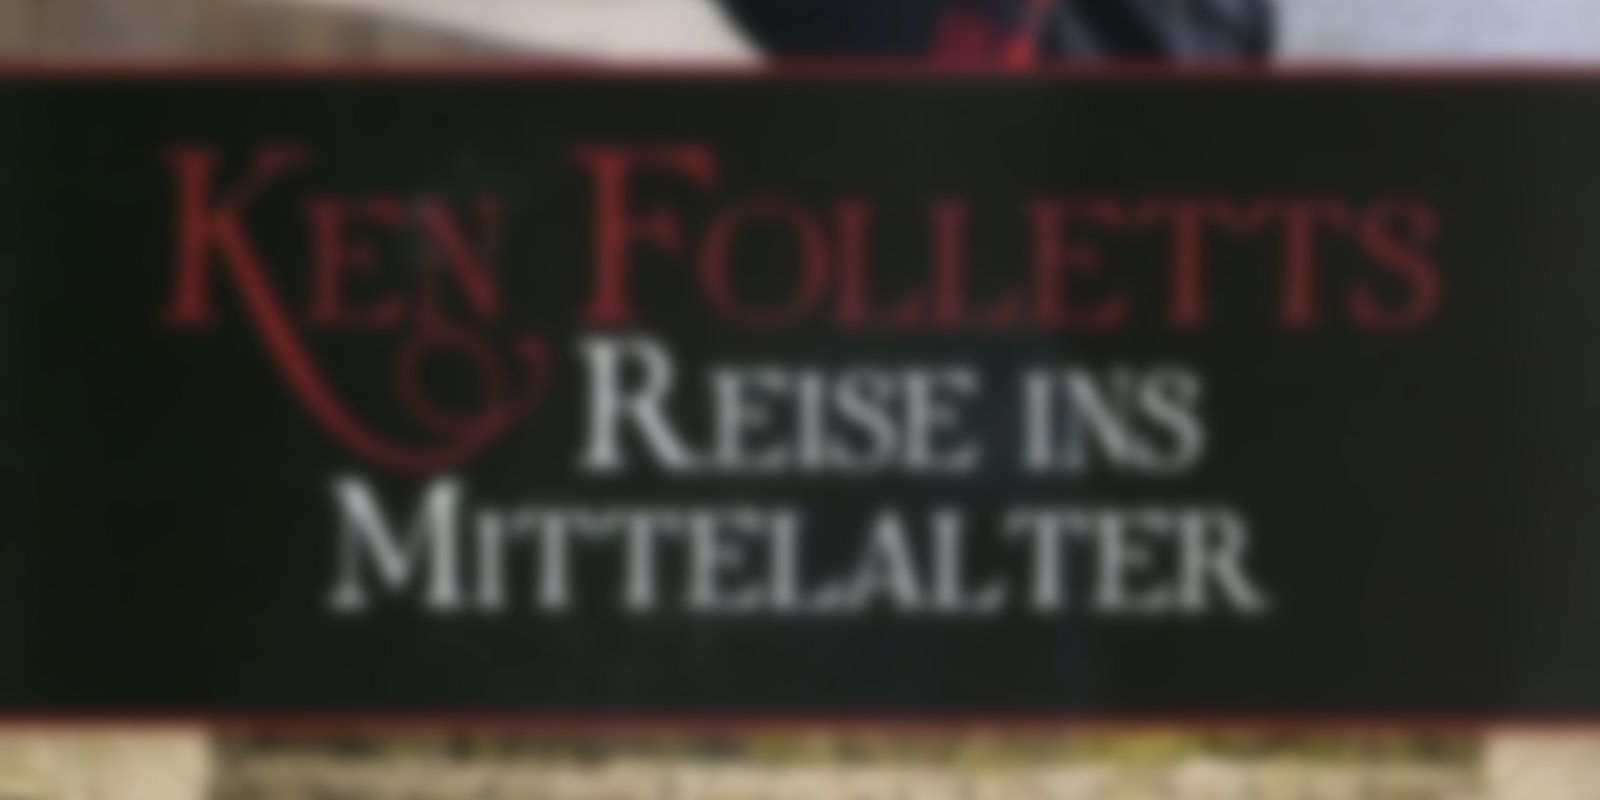 Ken Folletts Reise ins Mittelalter